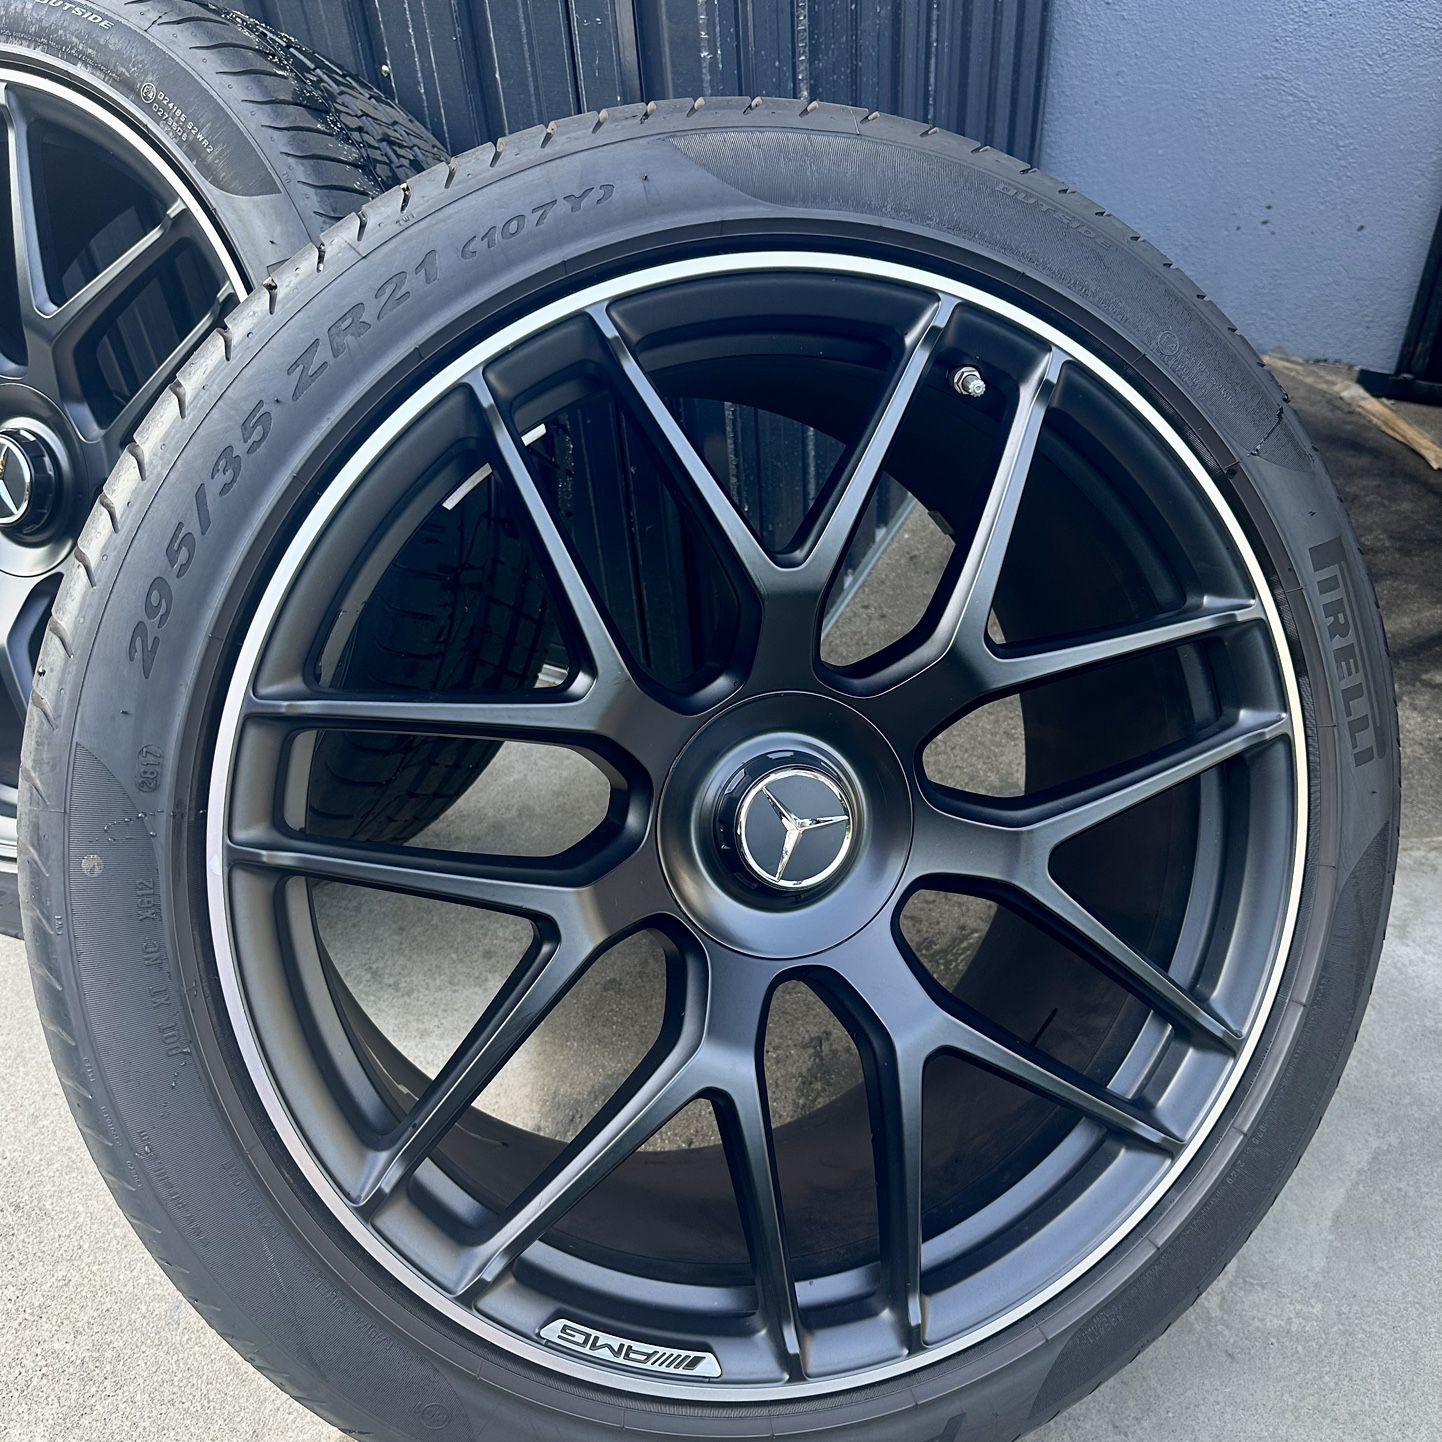 21” Forged Mercedes GLC63 AMG Wheels & Tires Pirelli